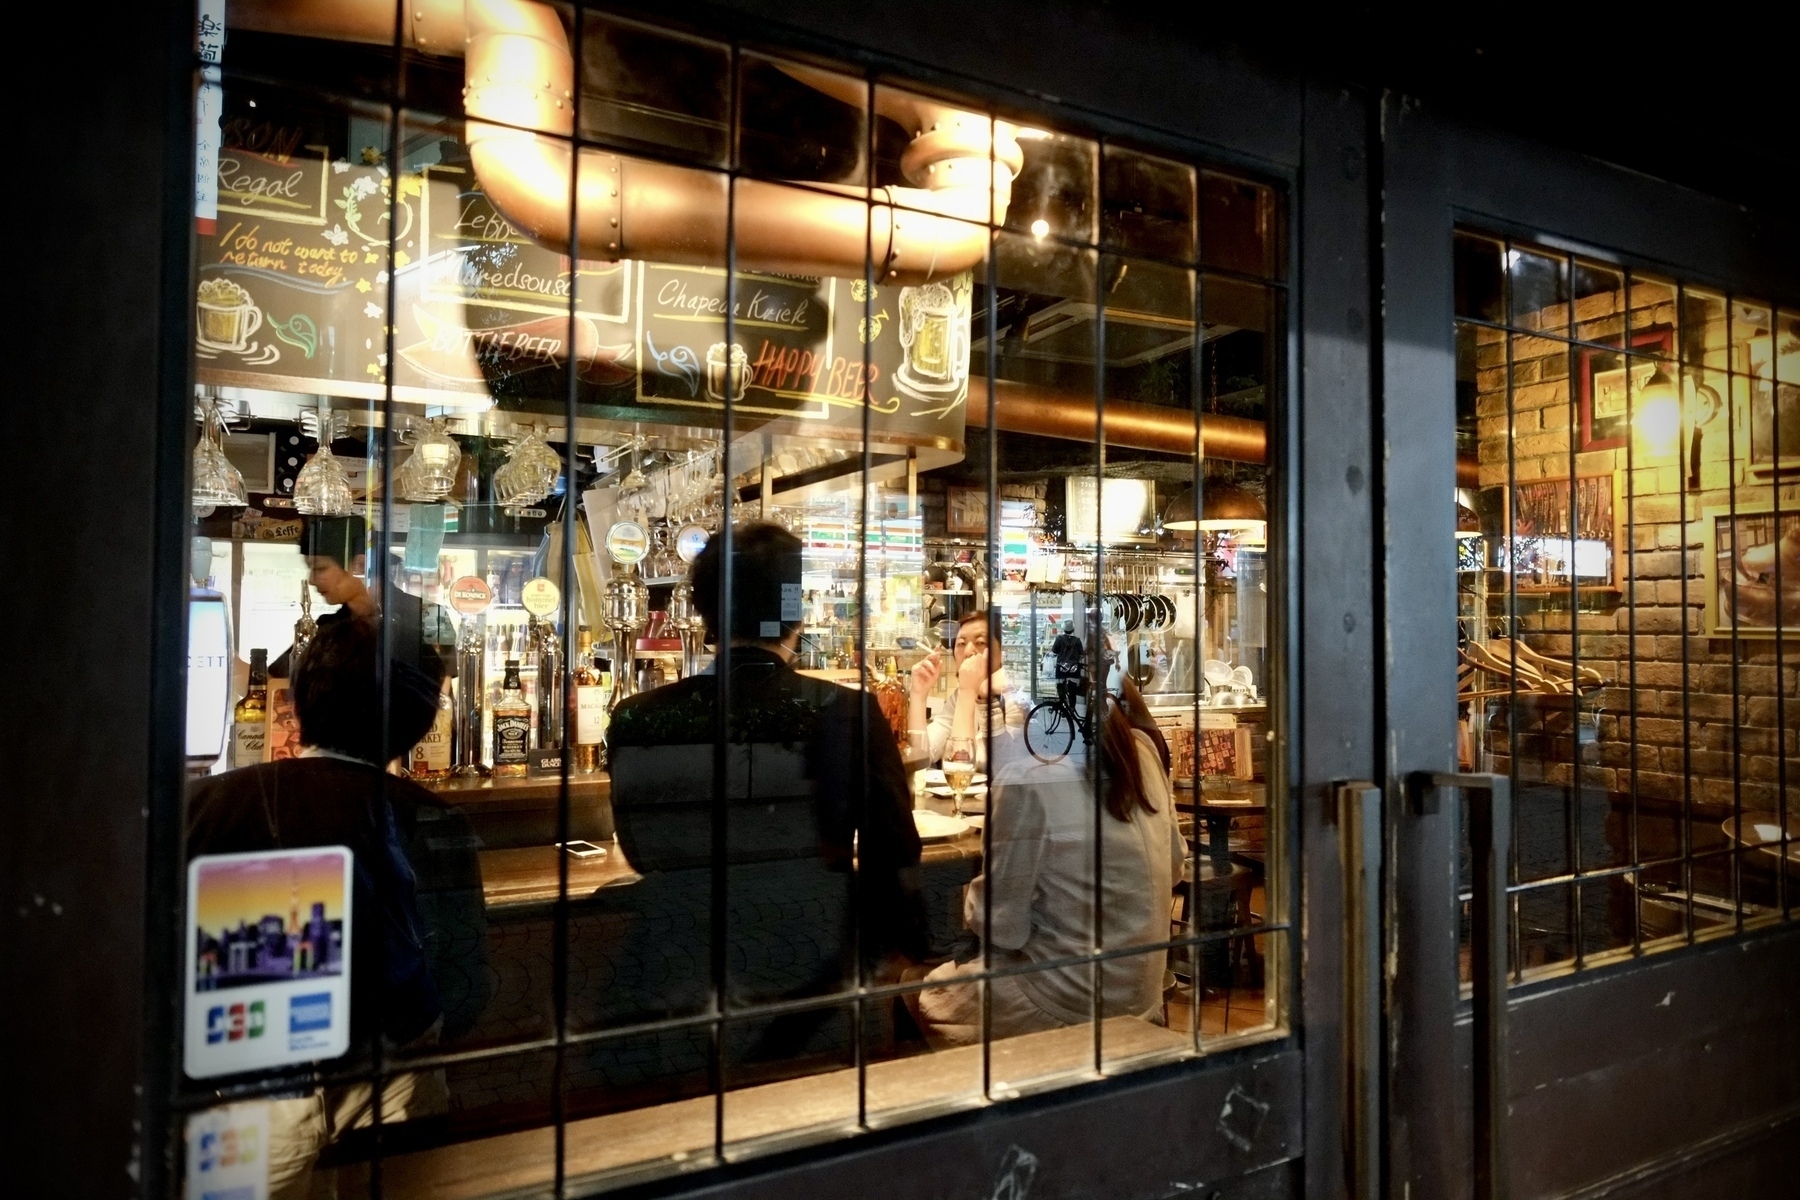 Patrons at a bar in Shinagawa Tokyo at night, with one looking directly at the camera. 